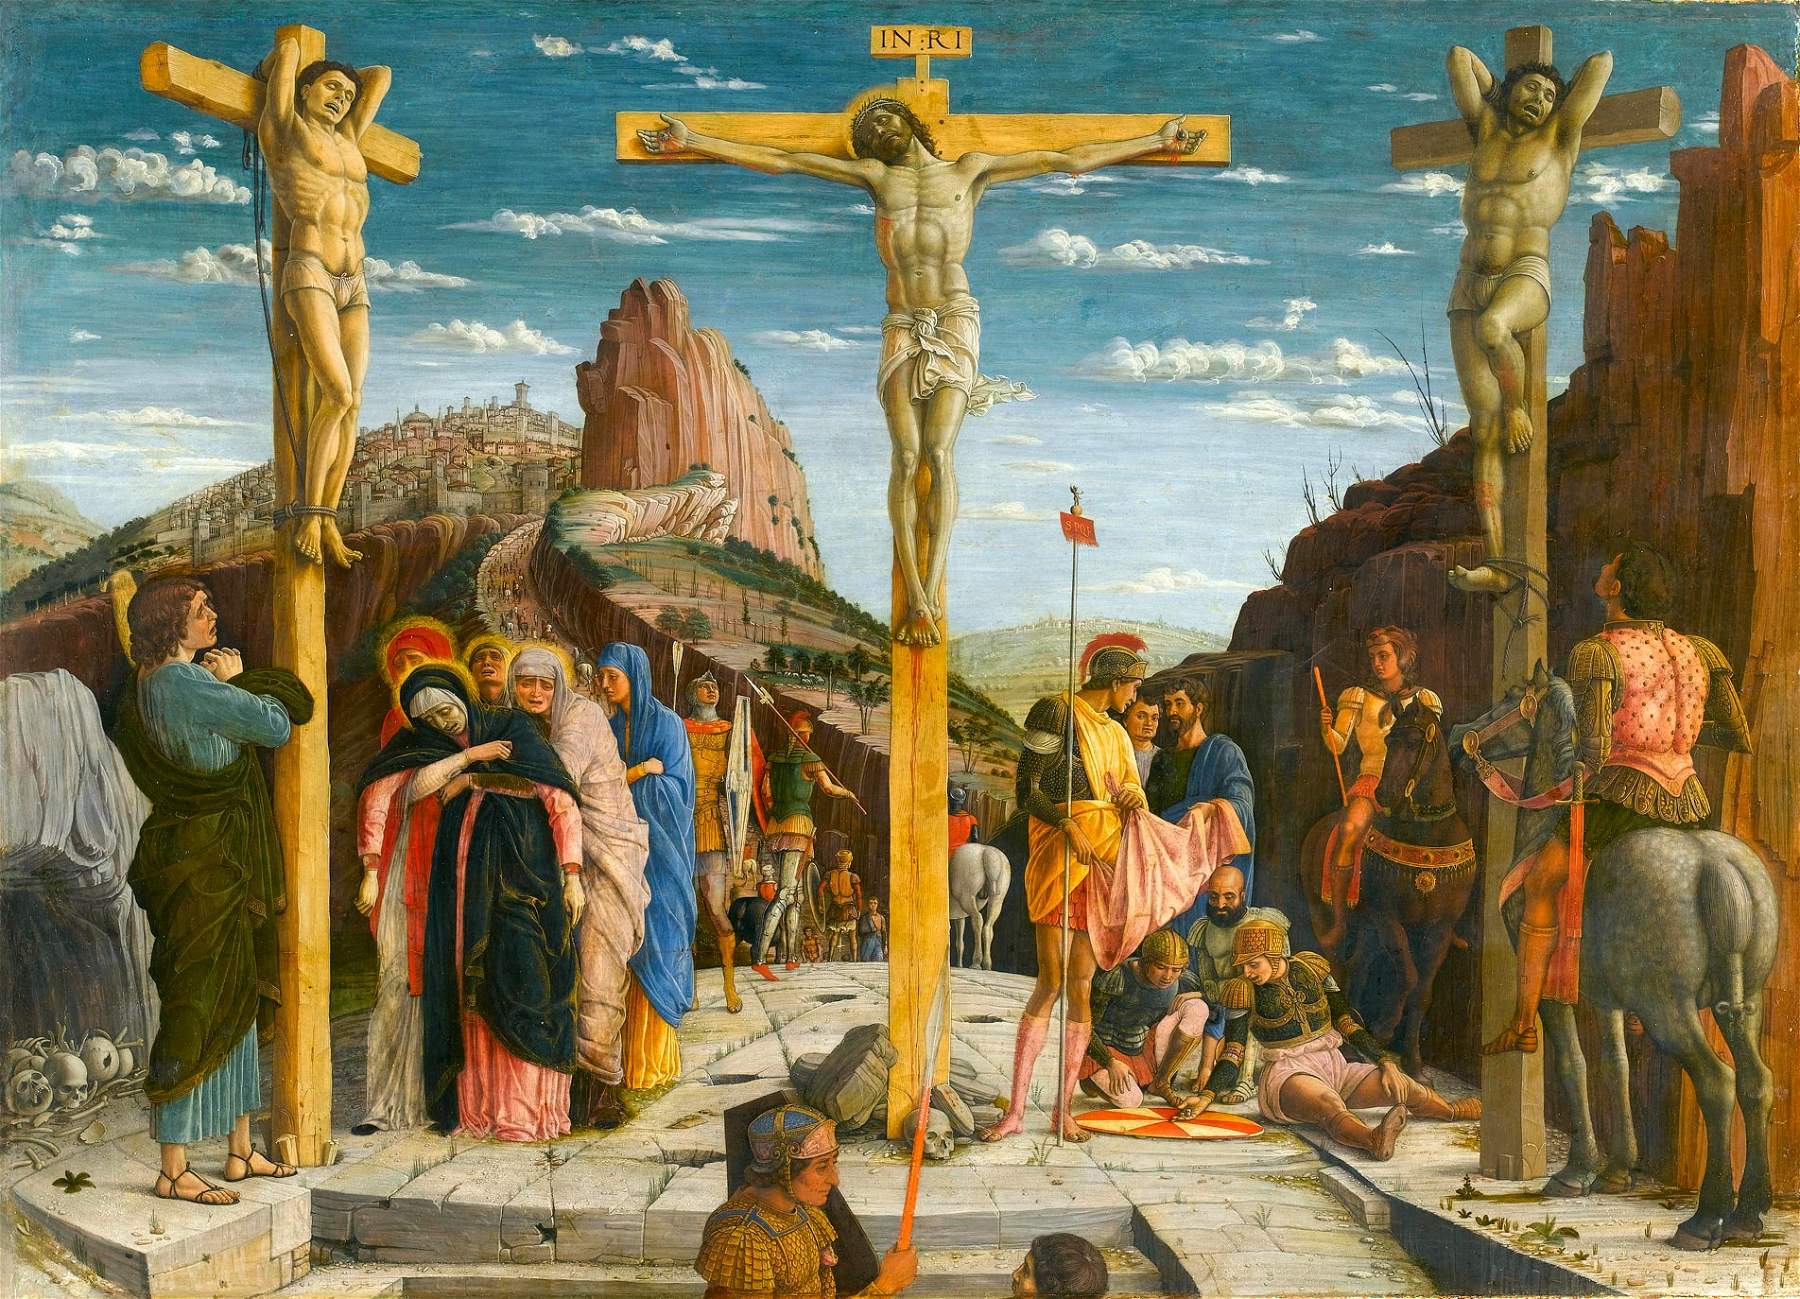 La France va-t-elle restituer trois tableaux de Mantegna volés par Napoléon ? Ouverture du débat